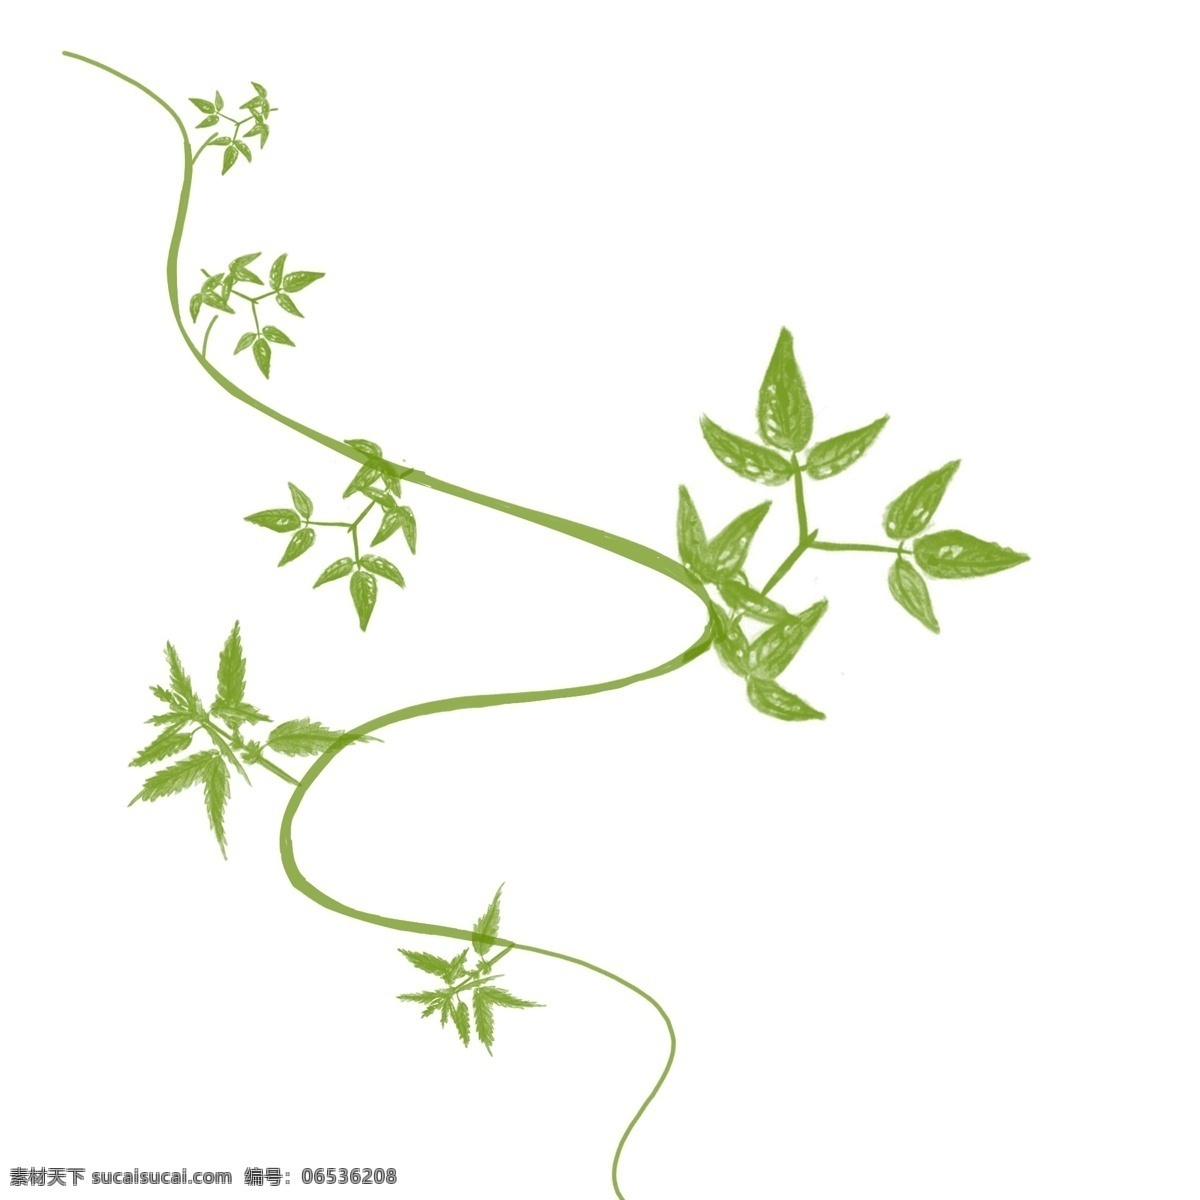 绿色 手绘 园艺 藤条 装饰 图案 植物 环保 天然 自然 森林 花艺 藤蔓 枝条 枝叶 树叶 叶子 绿叶 嫩绿 发芽